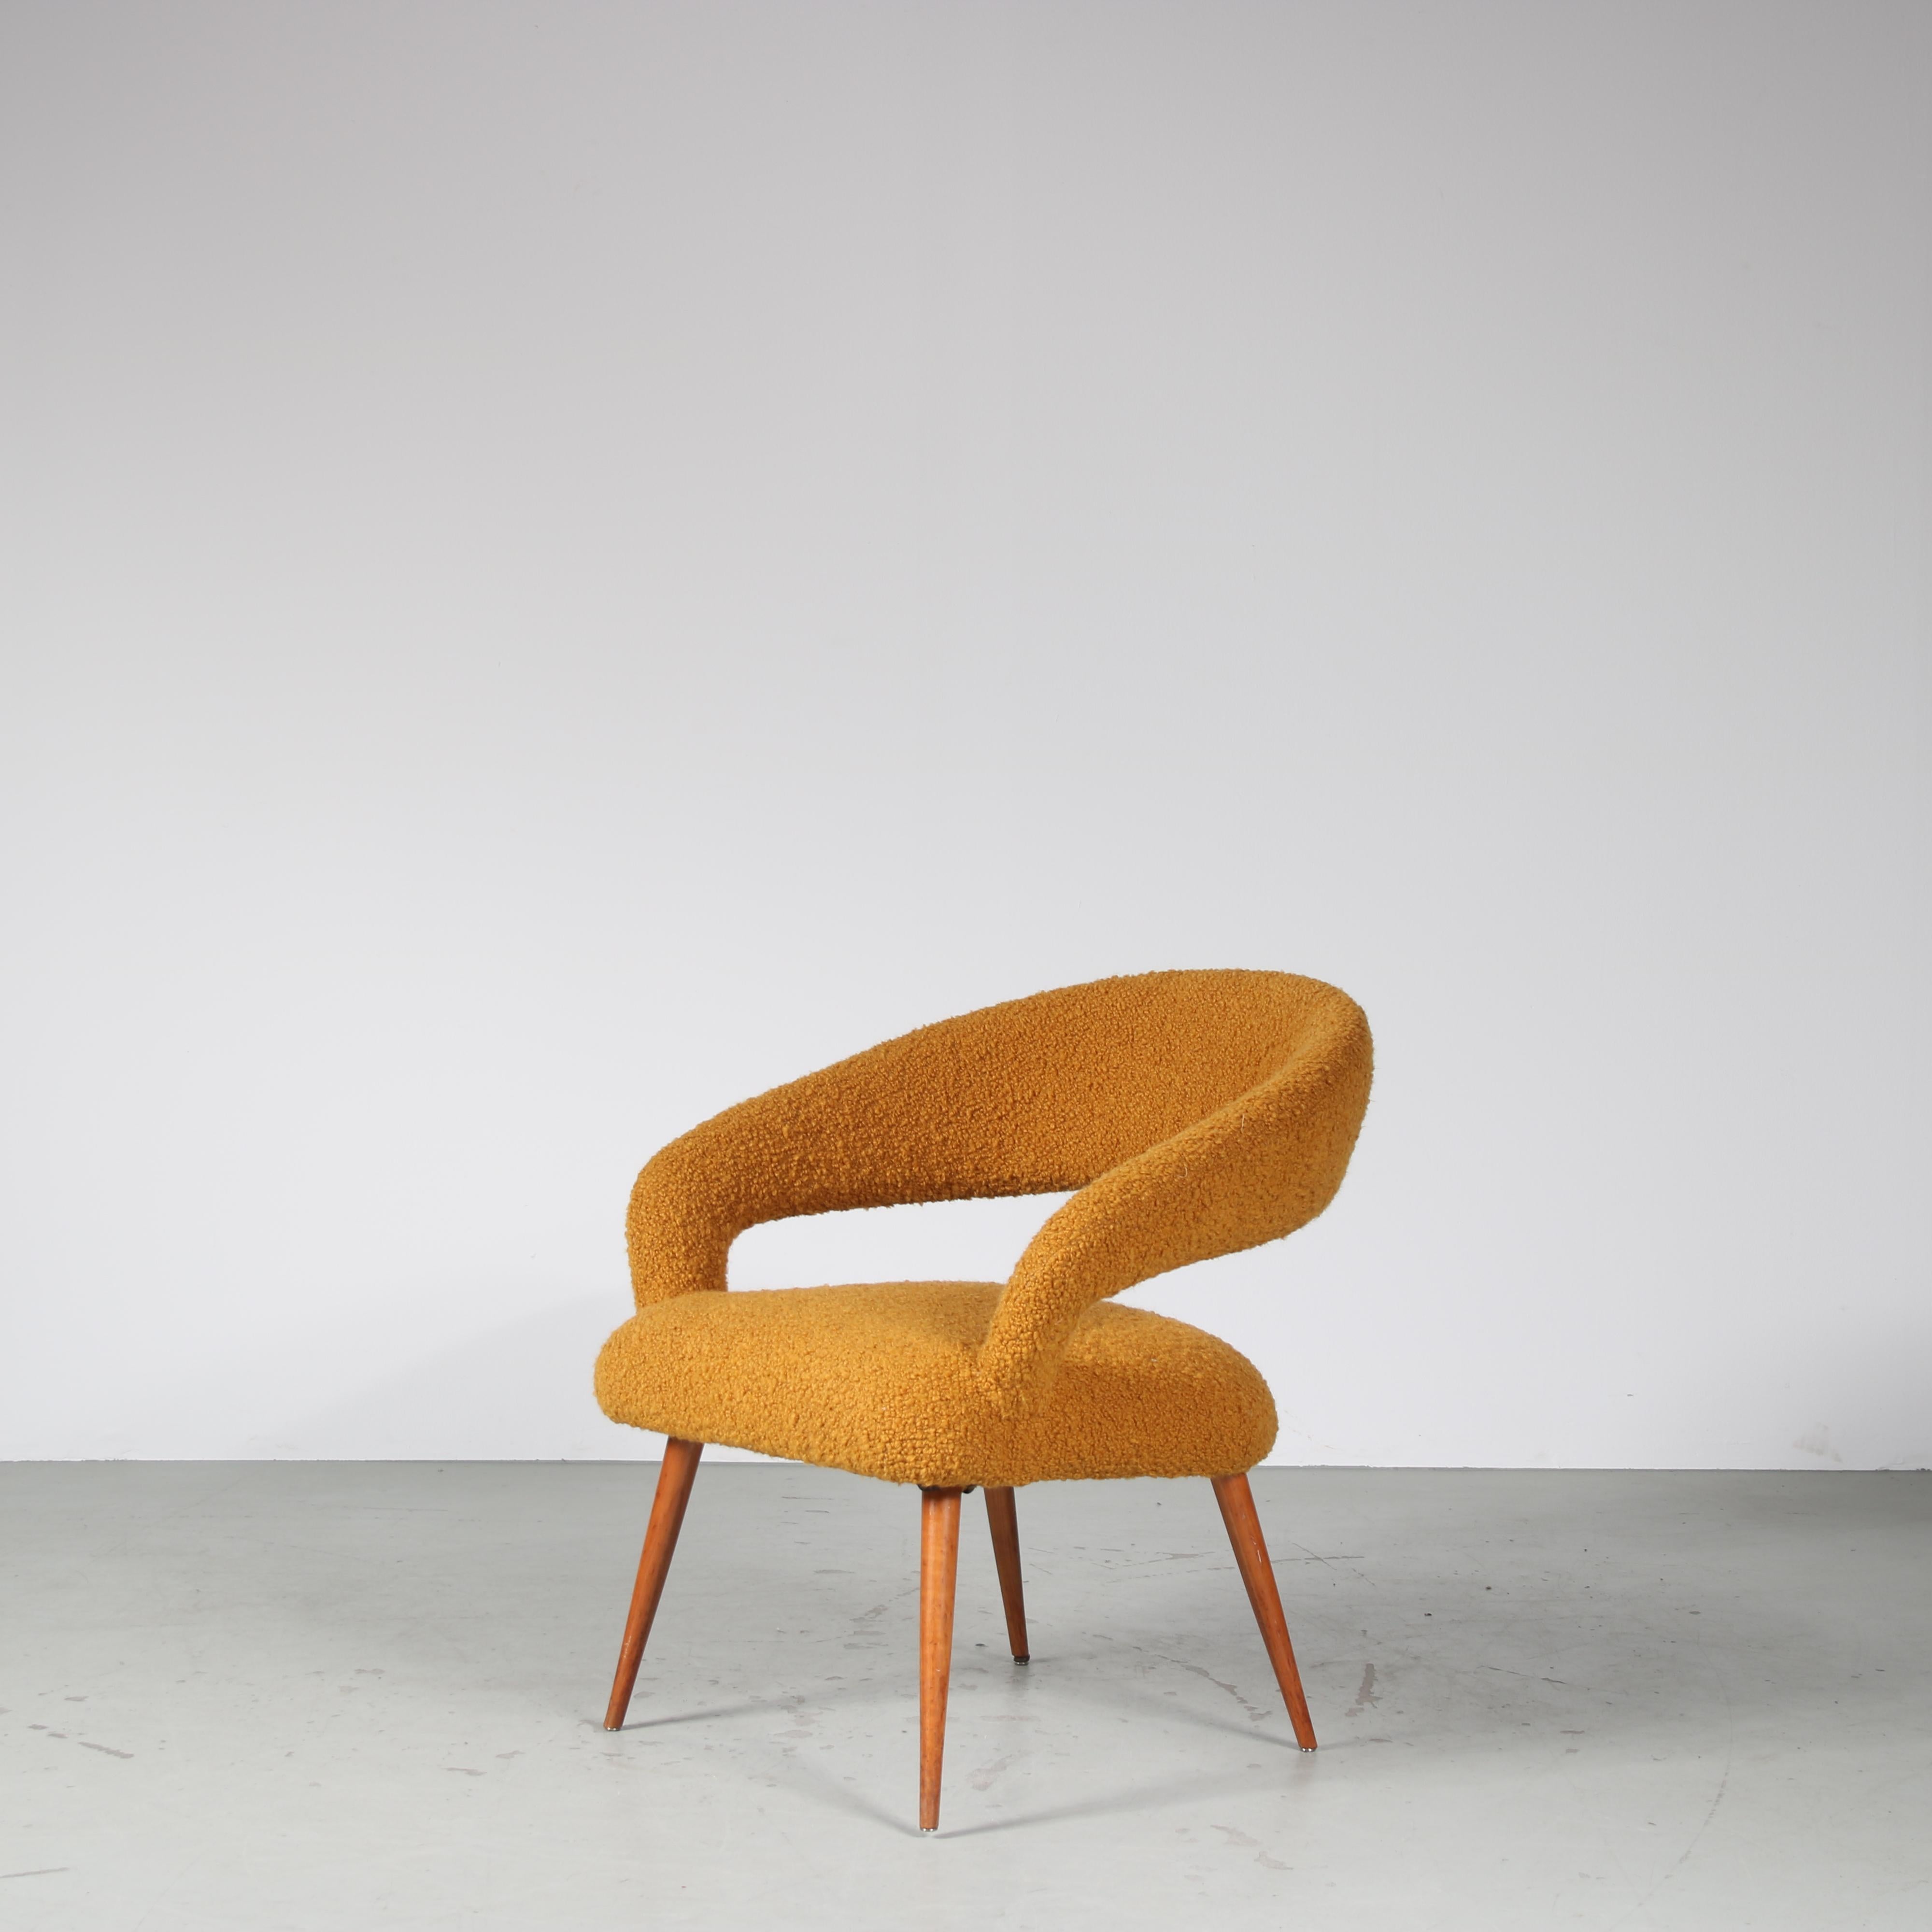 Un beau fauteuil élégant, conçu par Gastone Rinaldi et fabriqué par RIMA en Italie vers 1950.

L'assise joliment incurvée repose sur quatre pieds en bois légèrement effilés. Tout cela contribue au style luxueux de la pièce, magnifiquement complété